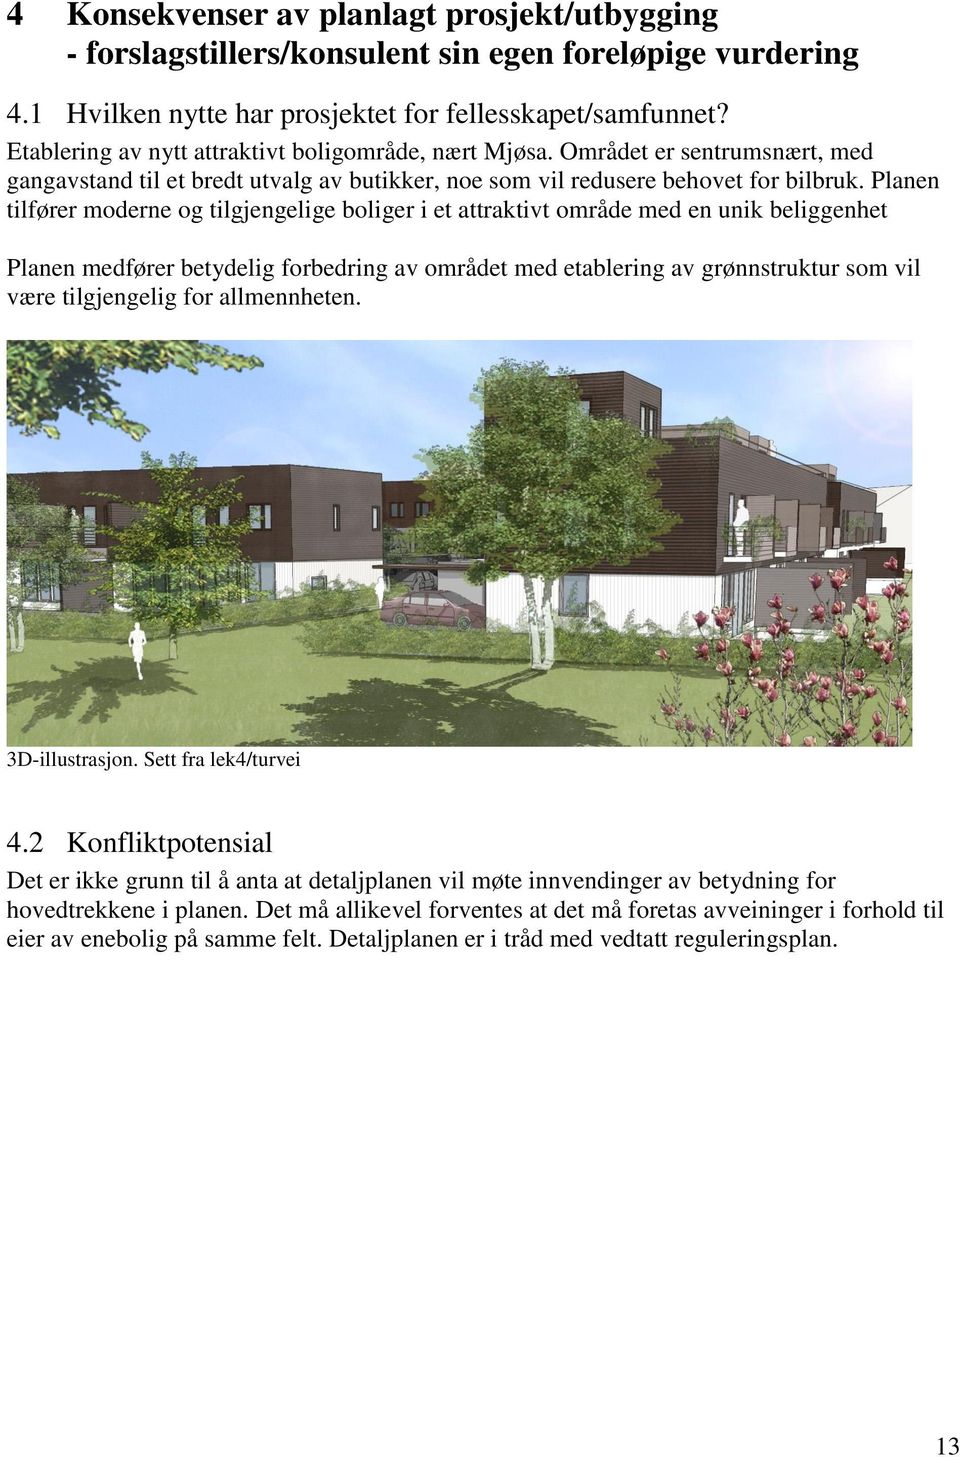 Planen tilfører moderne og tilgjengelige boliger i et attraktivt område med en unik beliggenhet Planen medfører betydelig forbedring av området med etablering av grønnstruktur som vil være